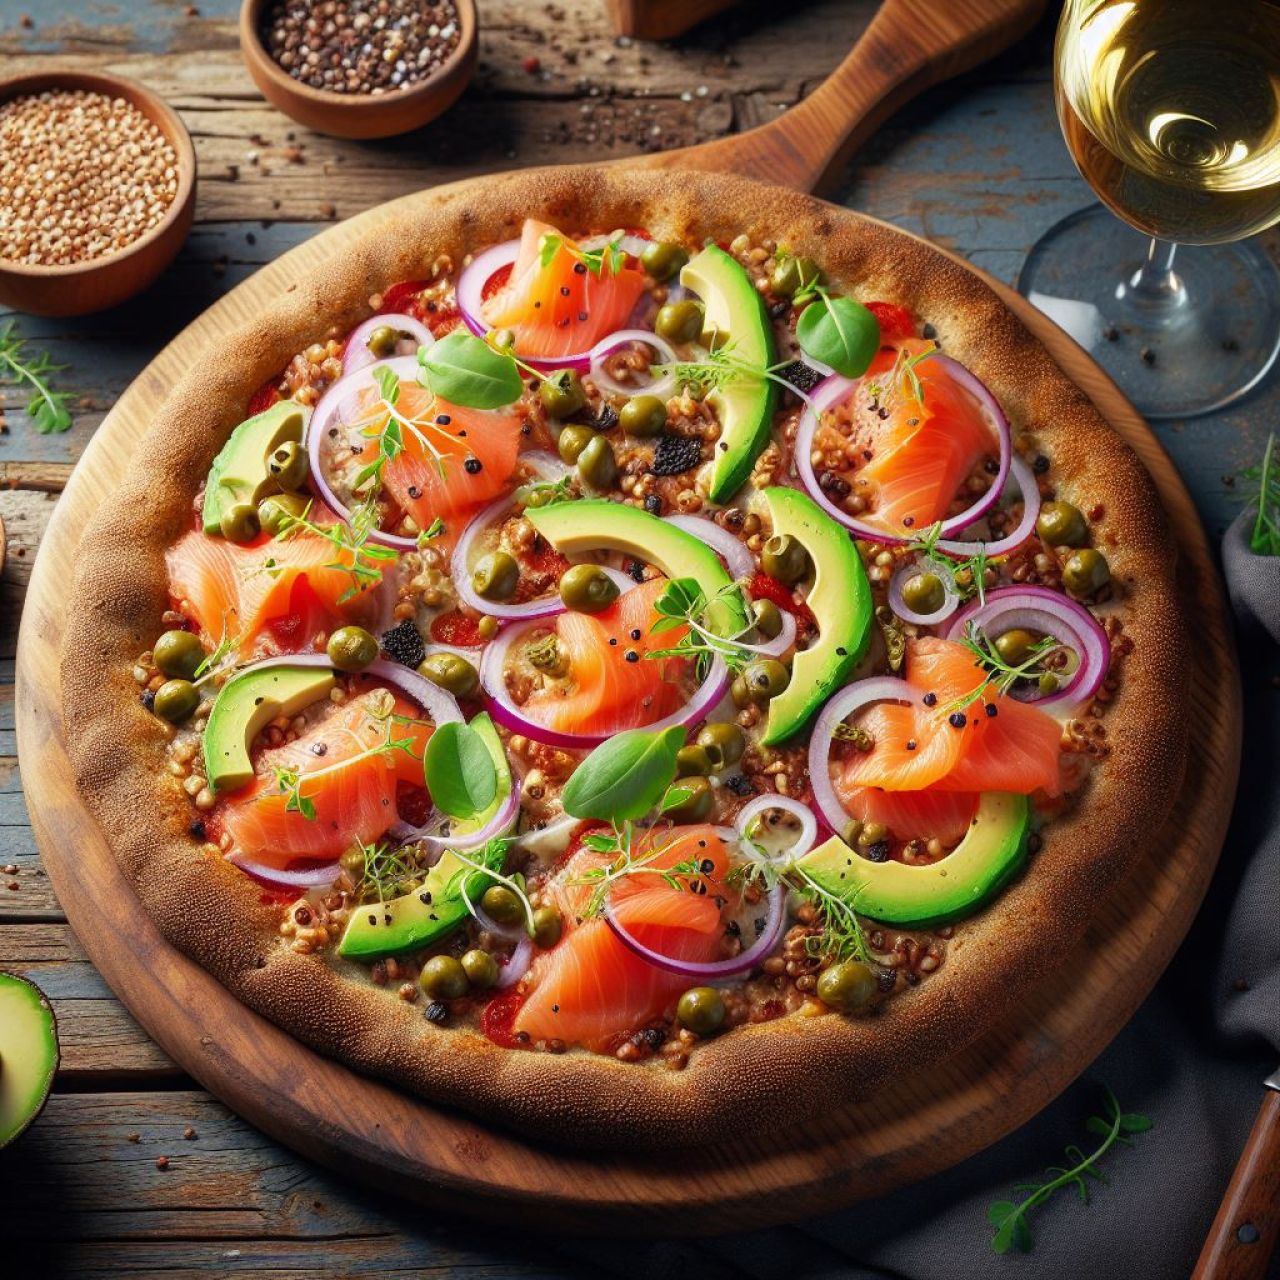 Gryczana pizza z łososiem i awokado - przepis na pyszną i zdrową pizzę